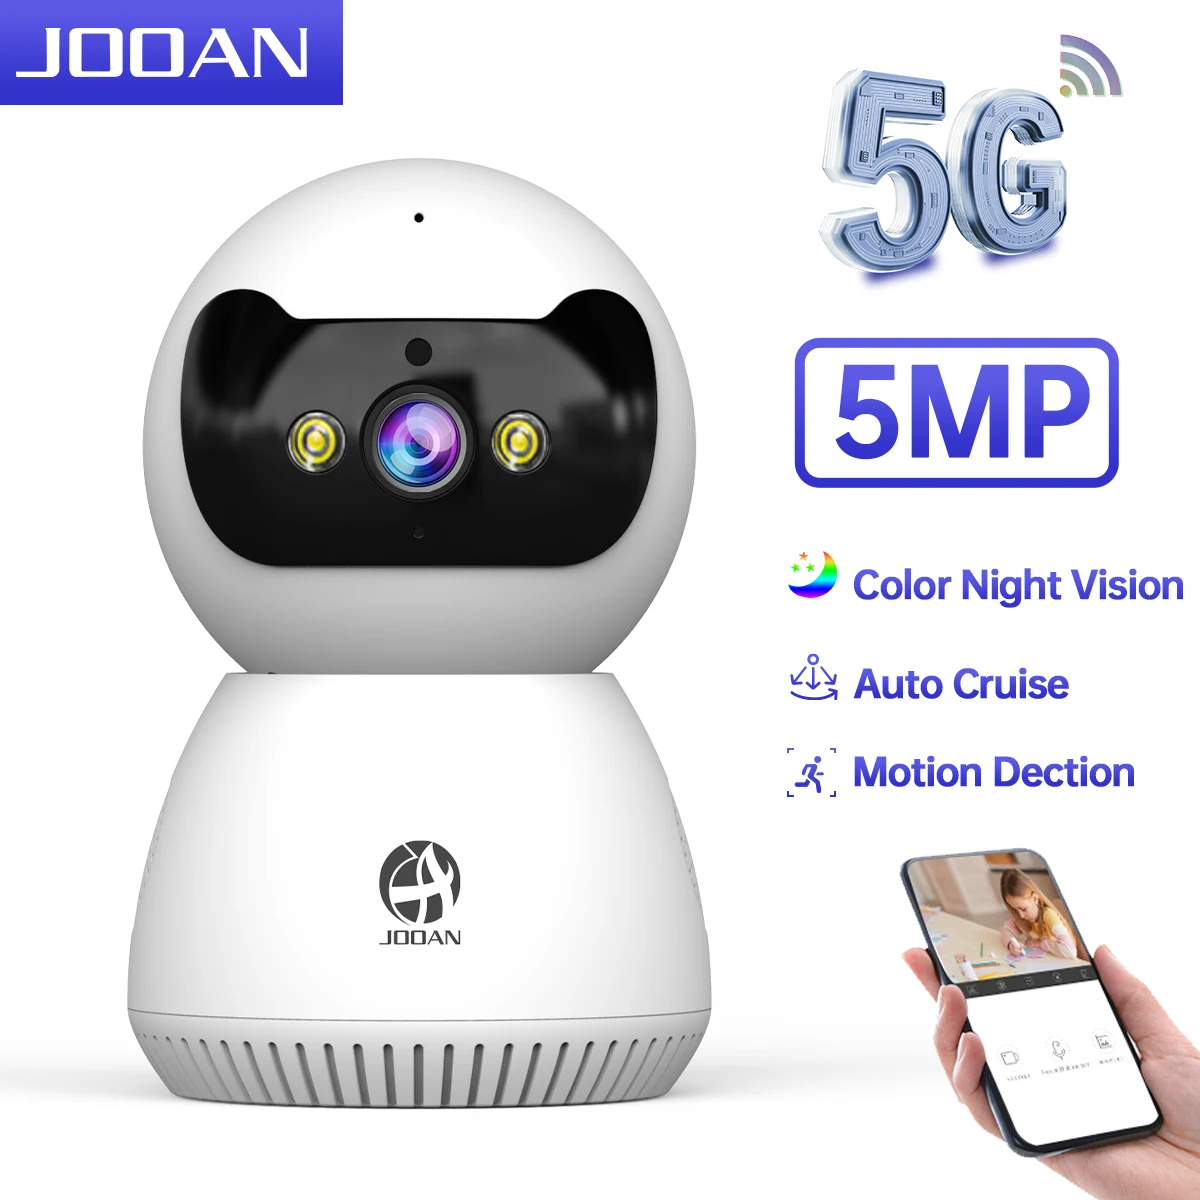 JOOAN 5MP 3MP IP 카메라 5G 와이파이 홈 보안 카메라, AI 추적 비디오 감시 카메라, 컬러 나이트 비전 스마트 베이비 모니터